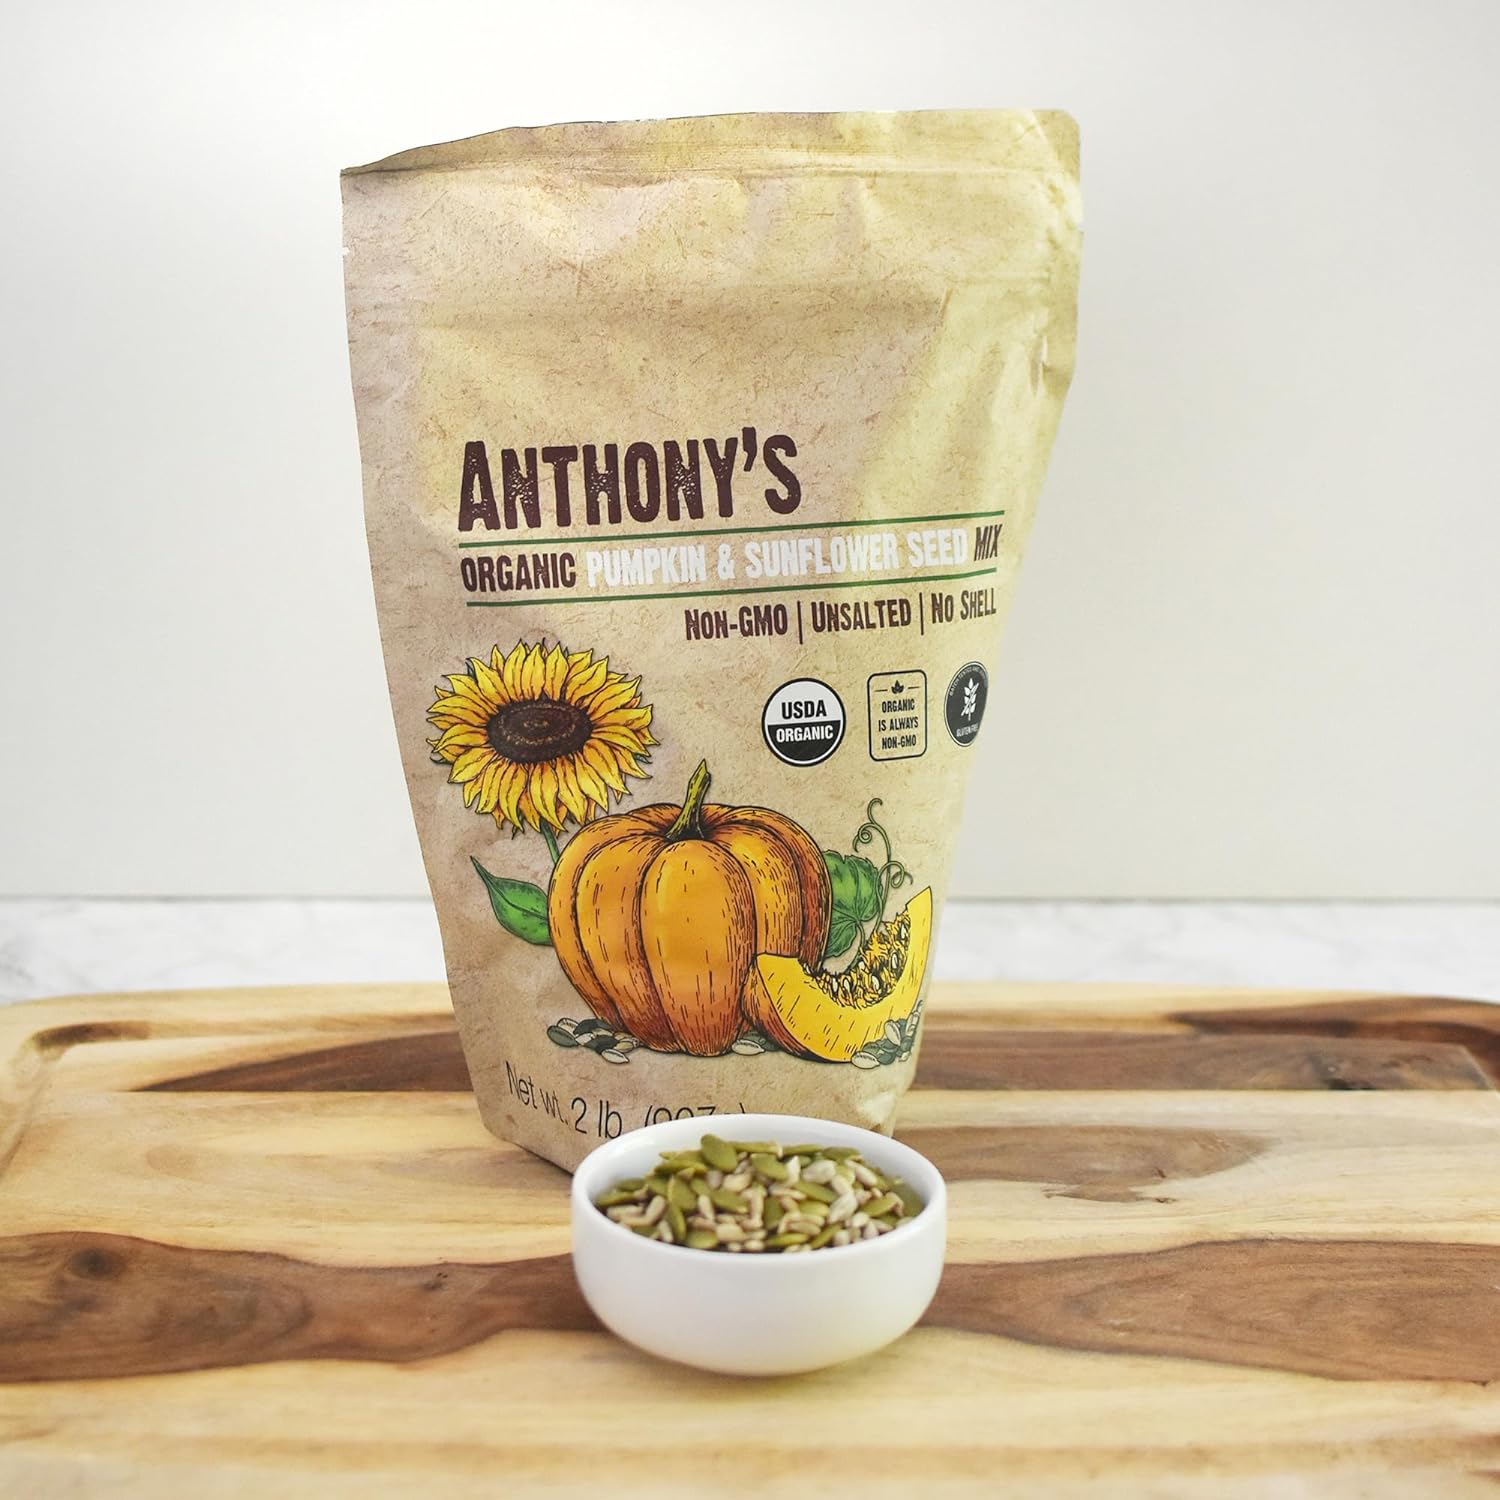 Organic Pumpkin & Sunflower Seed Mix